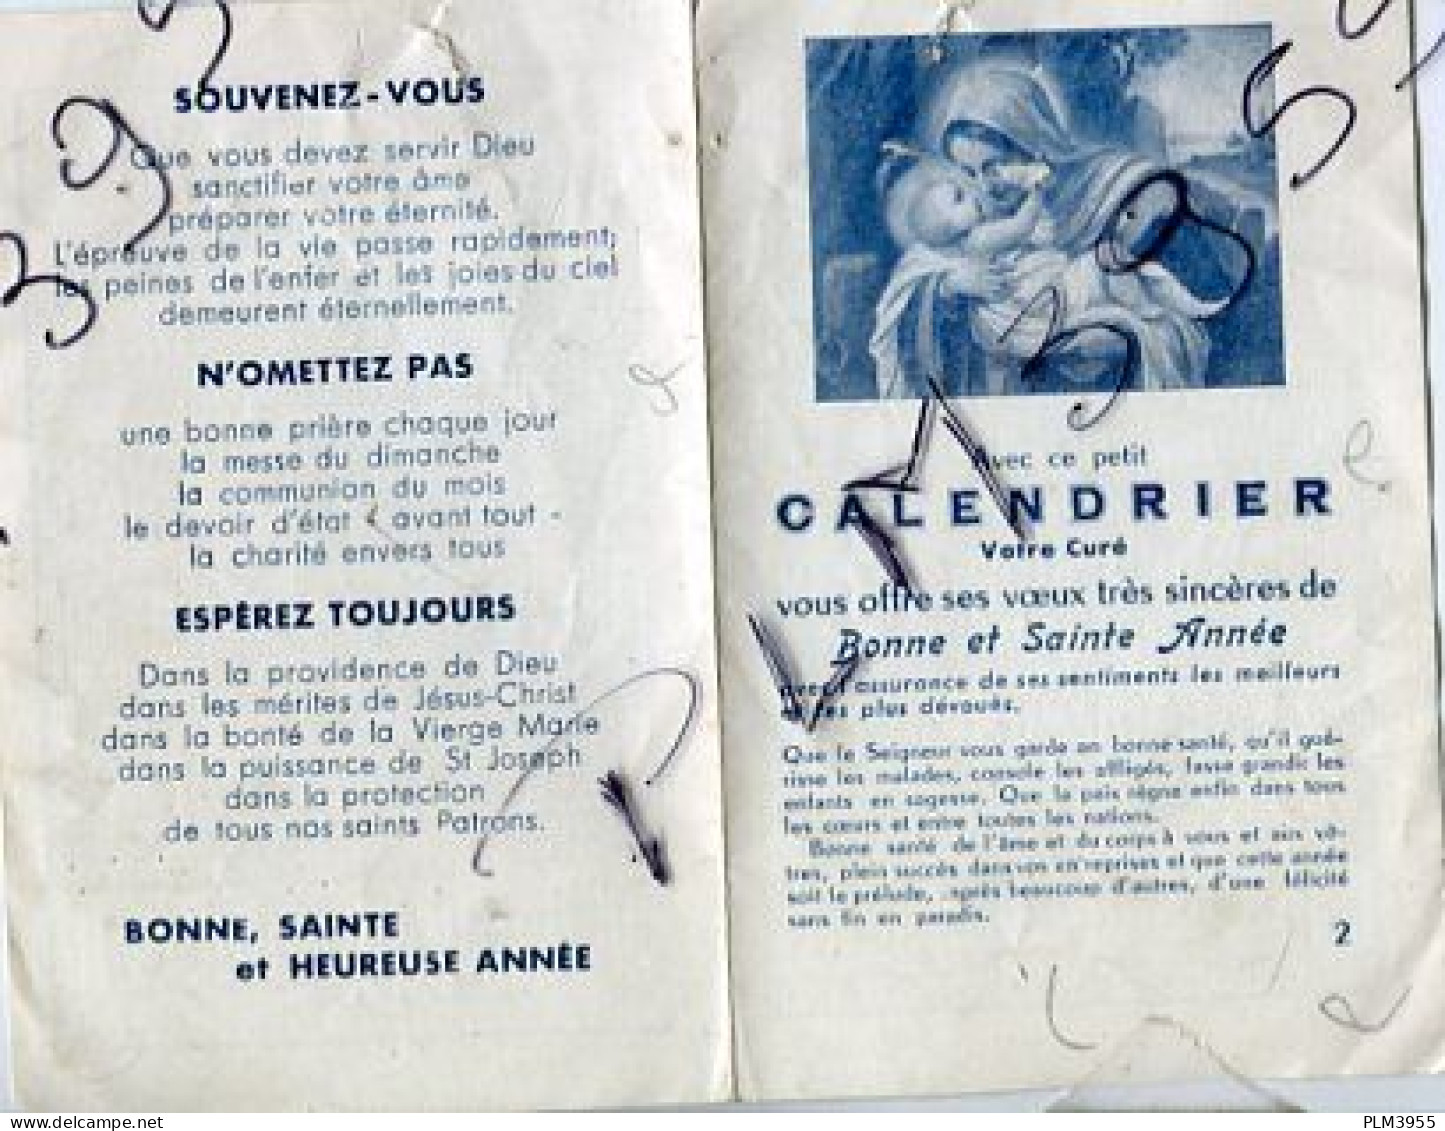 7 calendriers 1948 1952 1911 1977 1950 1949 1912 Bernadette Nevers stoffel Boymond Georges Rives Confiseur chocolatier L